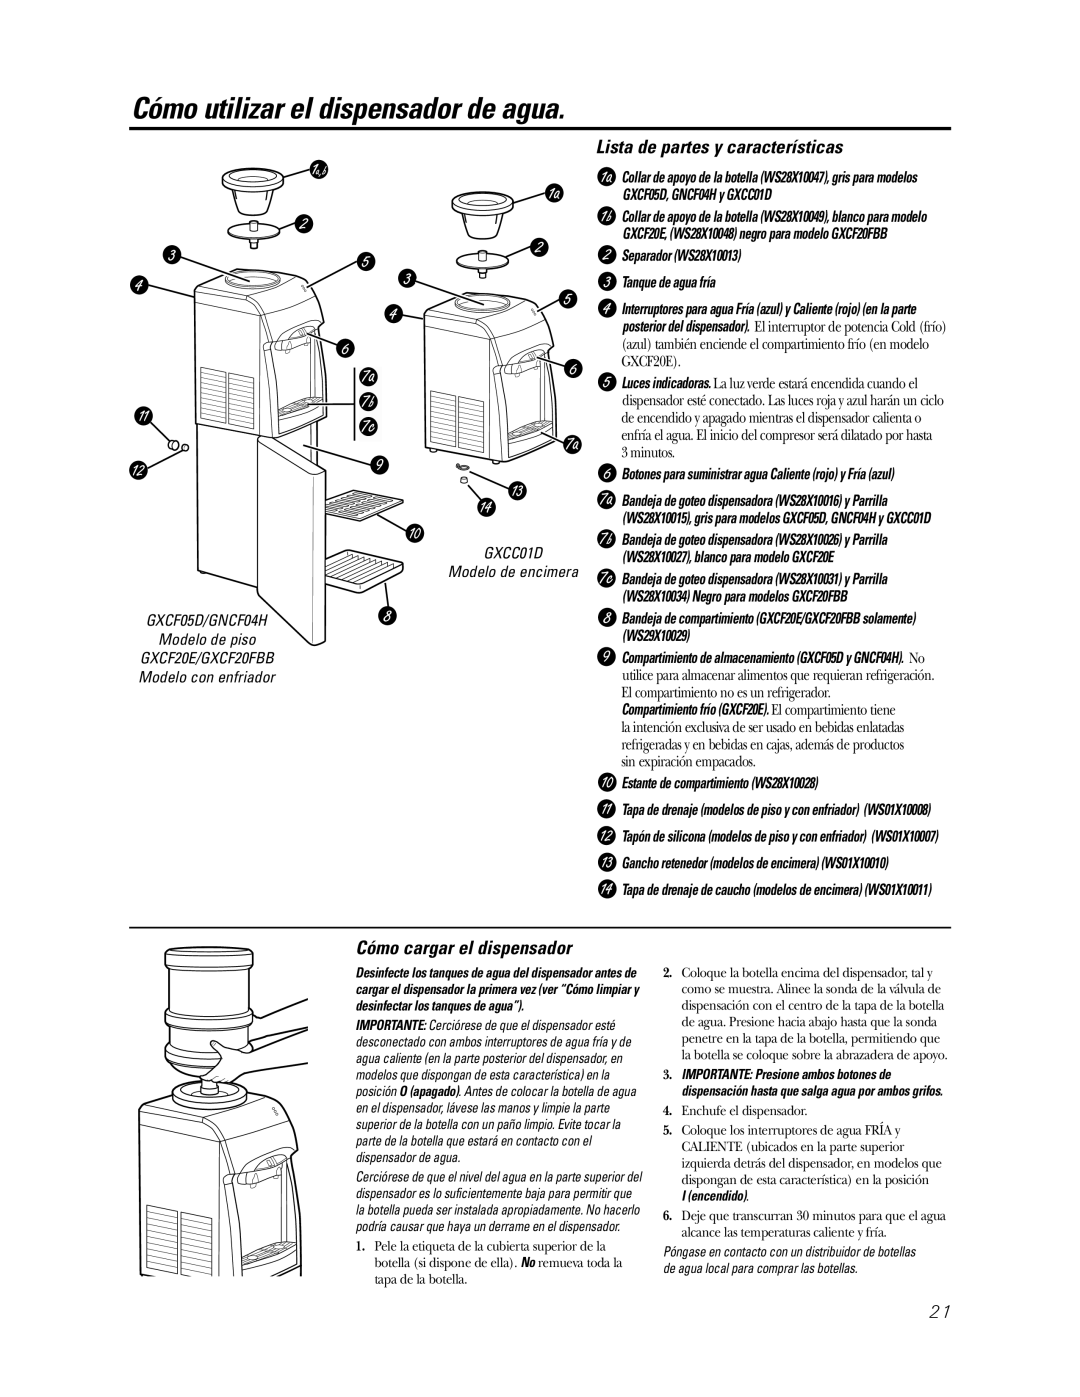 GE GNCF04H/GXCF05D Cómo utilizar el dispensador de agua, Lista de partes y características, Cómo cargar el dispensador 